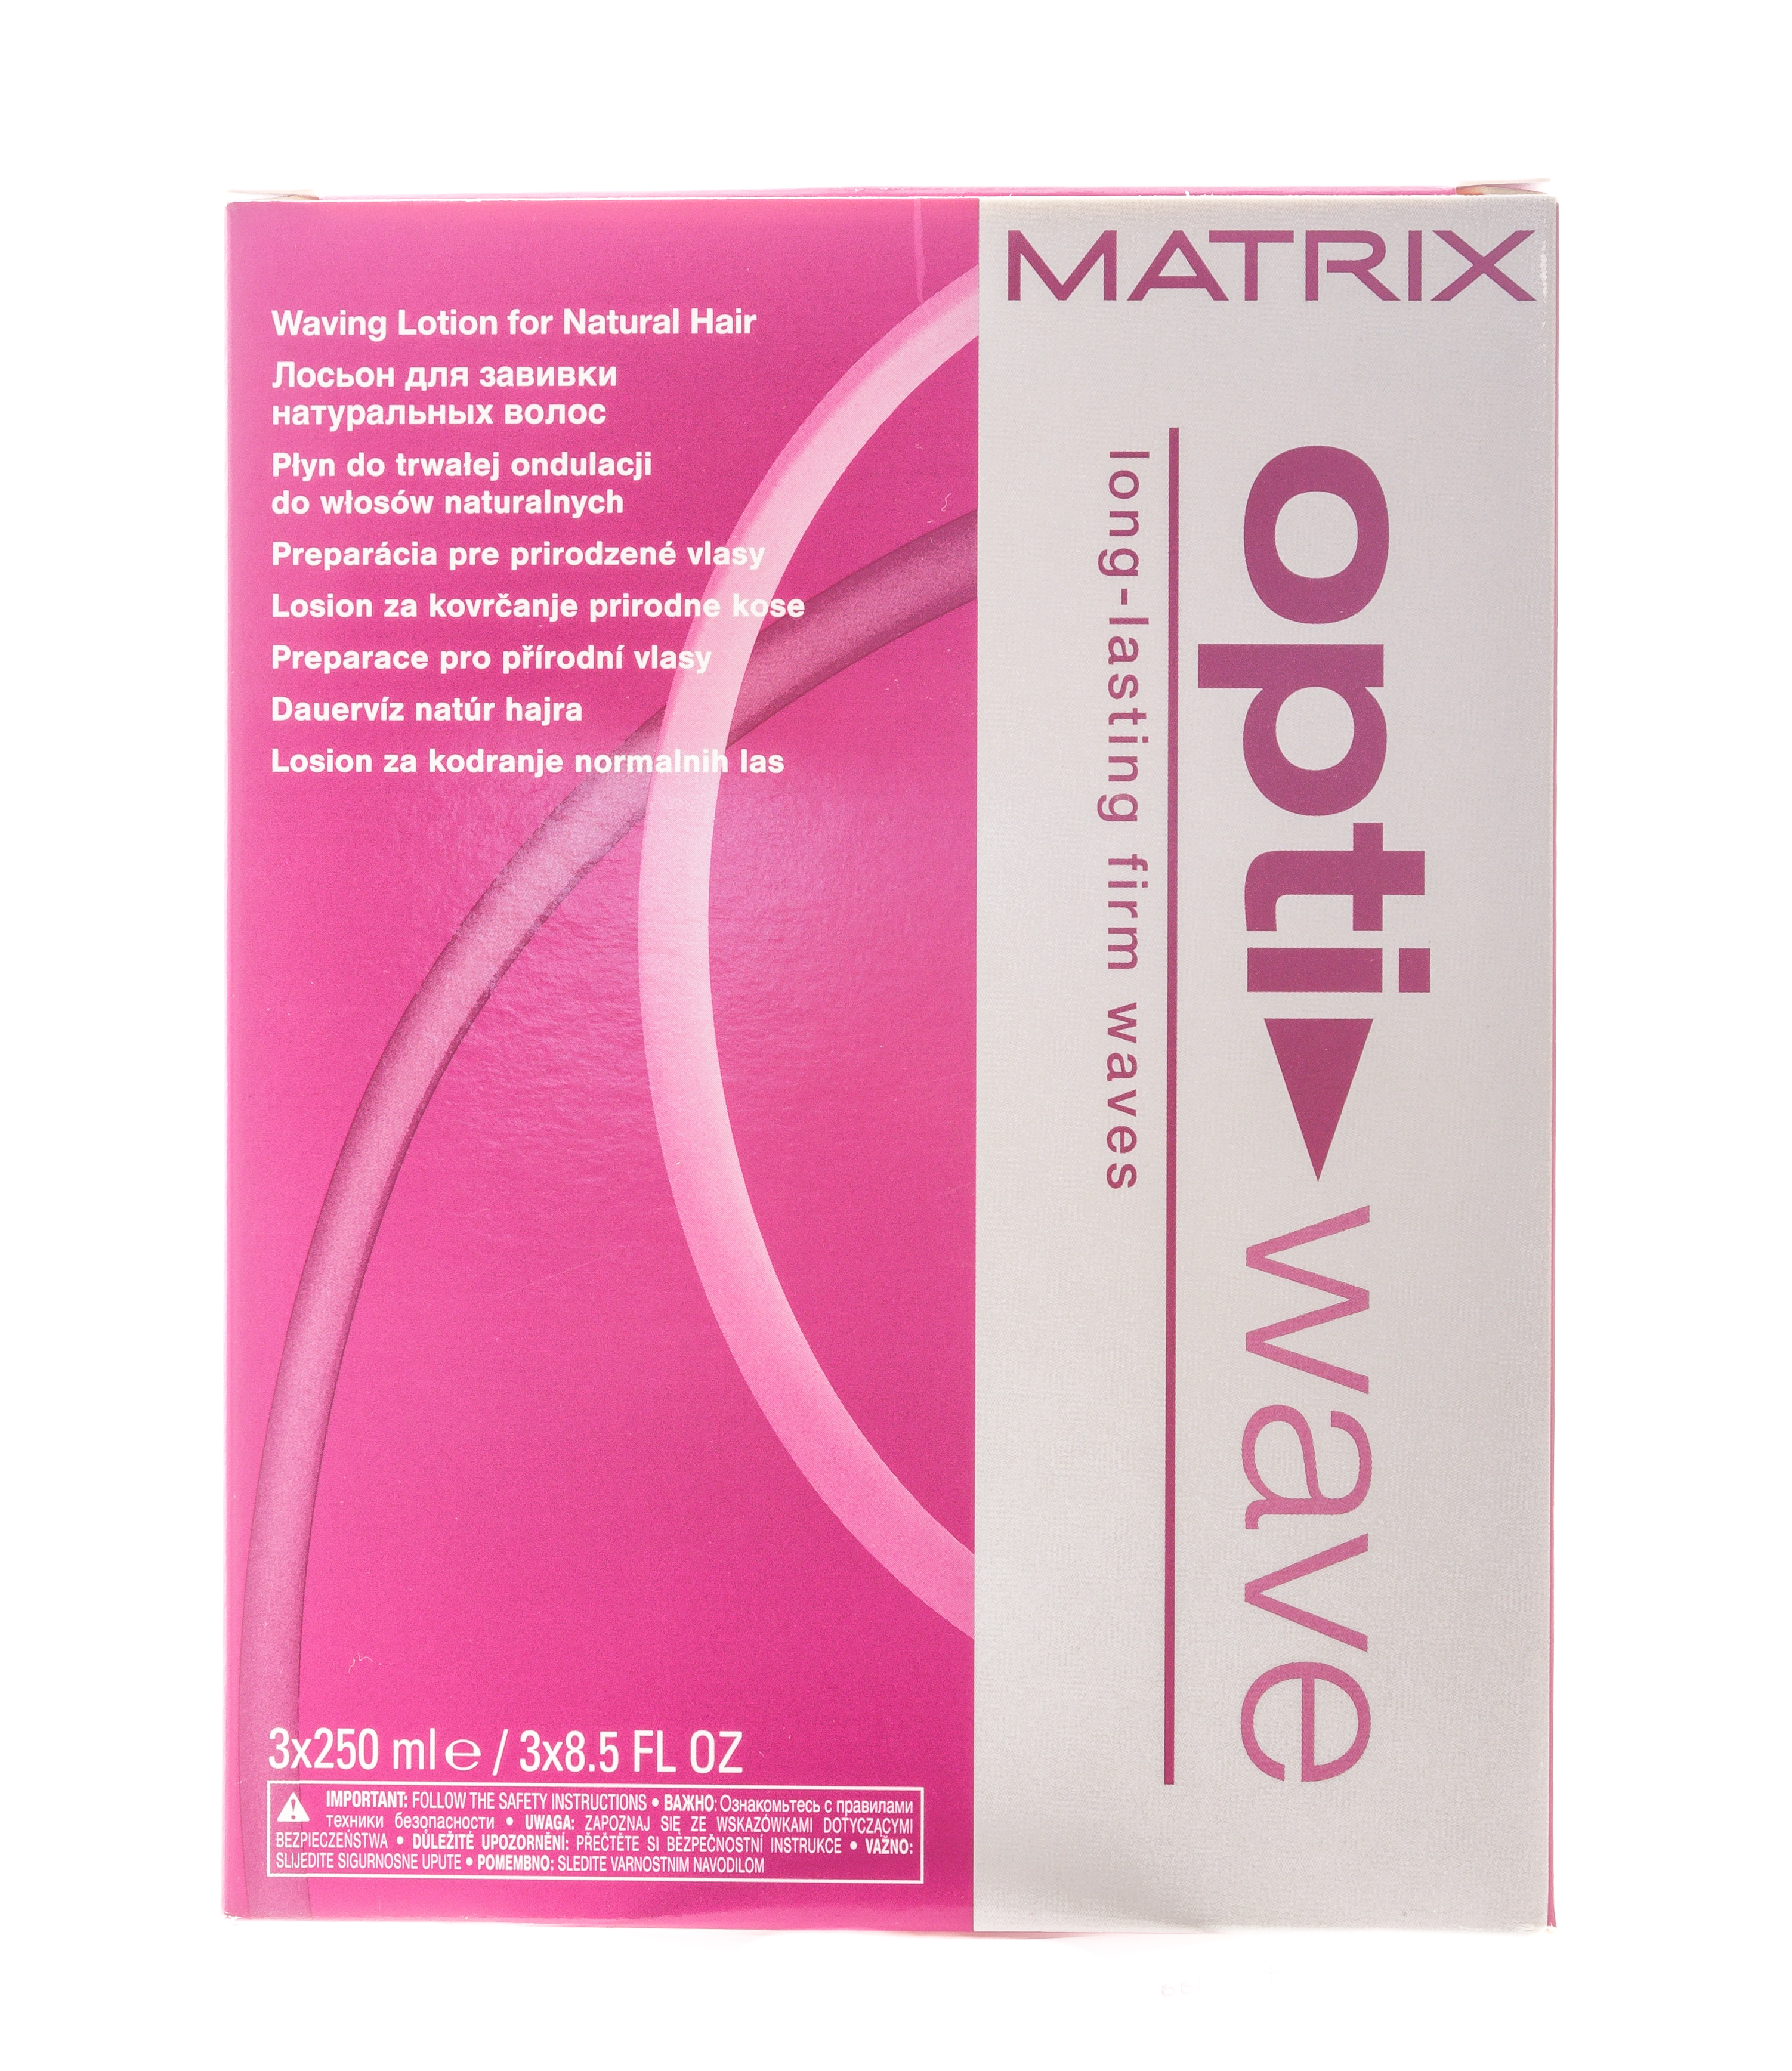 Matrix Лосьон для завивки натуральных волос, 3 х 250 мл. фото